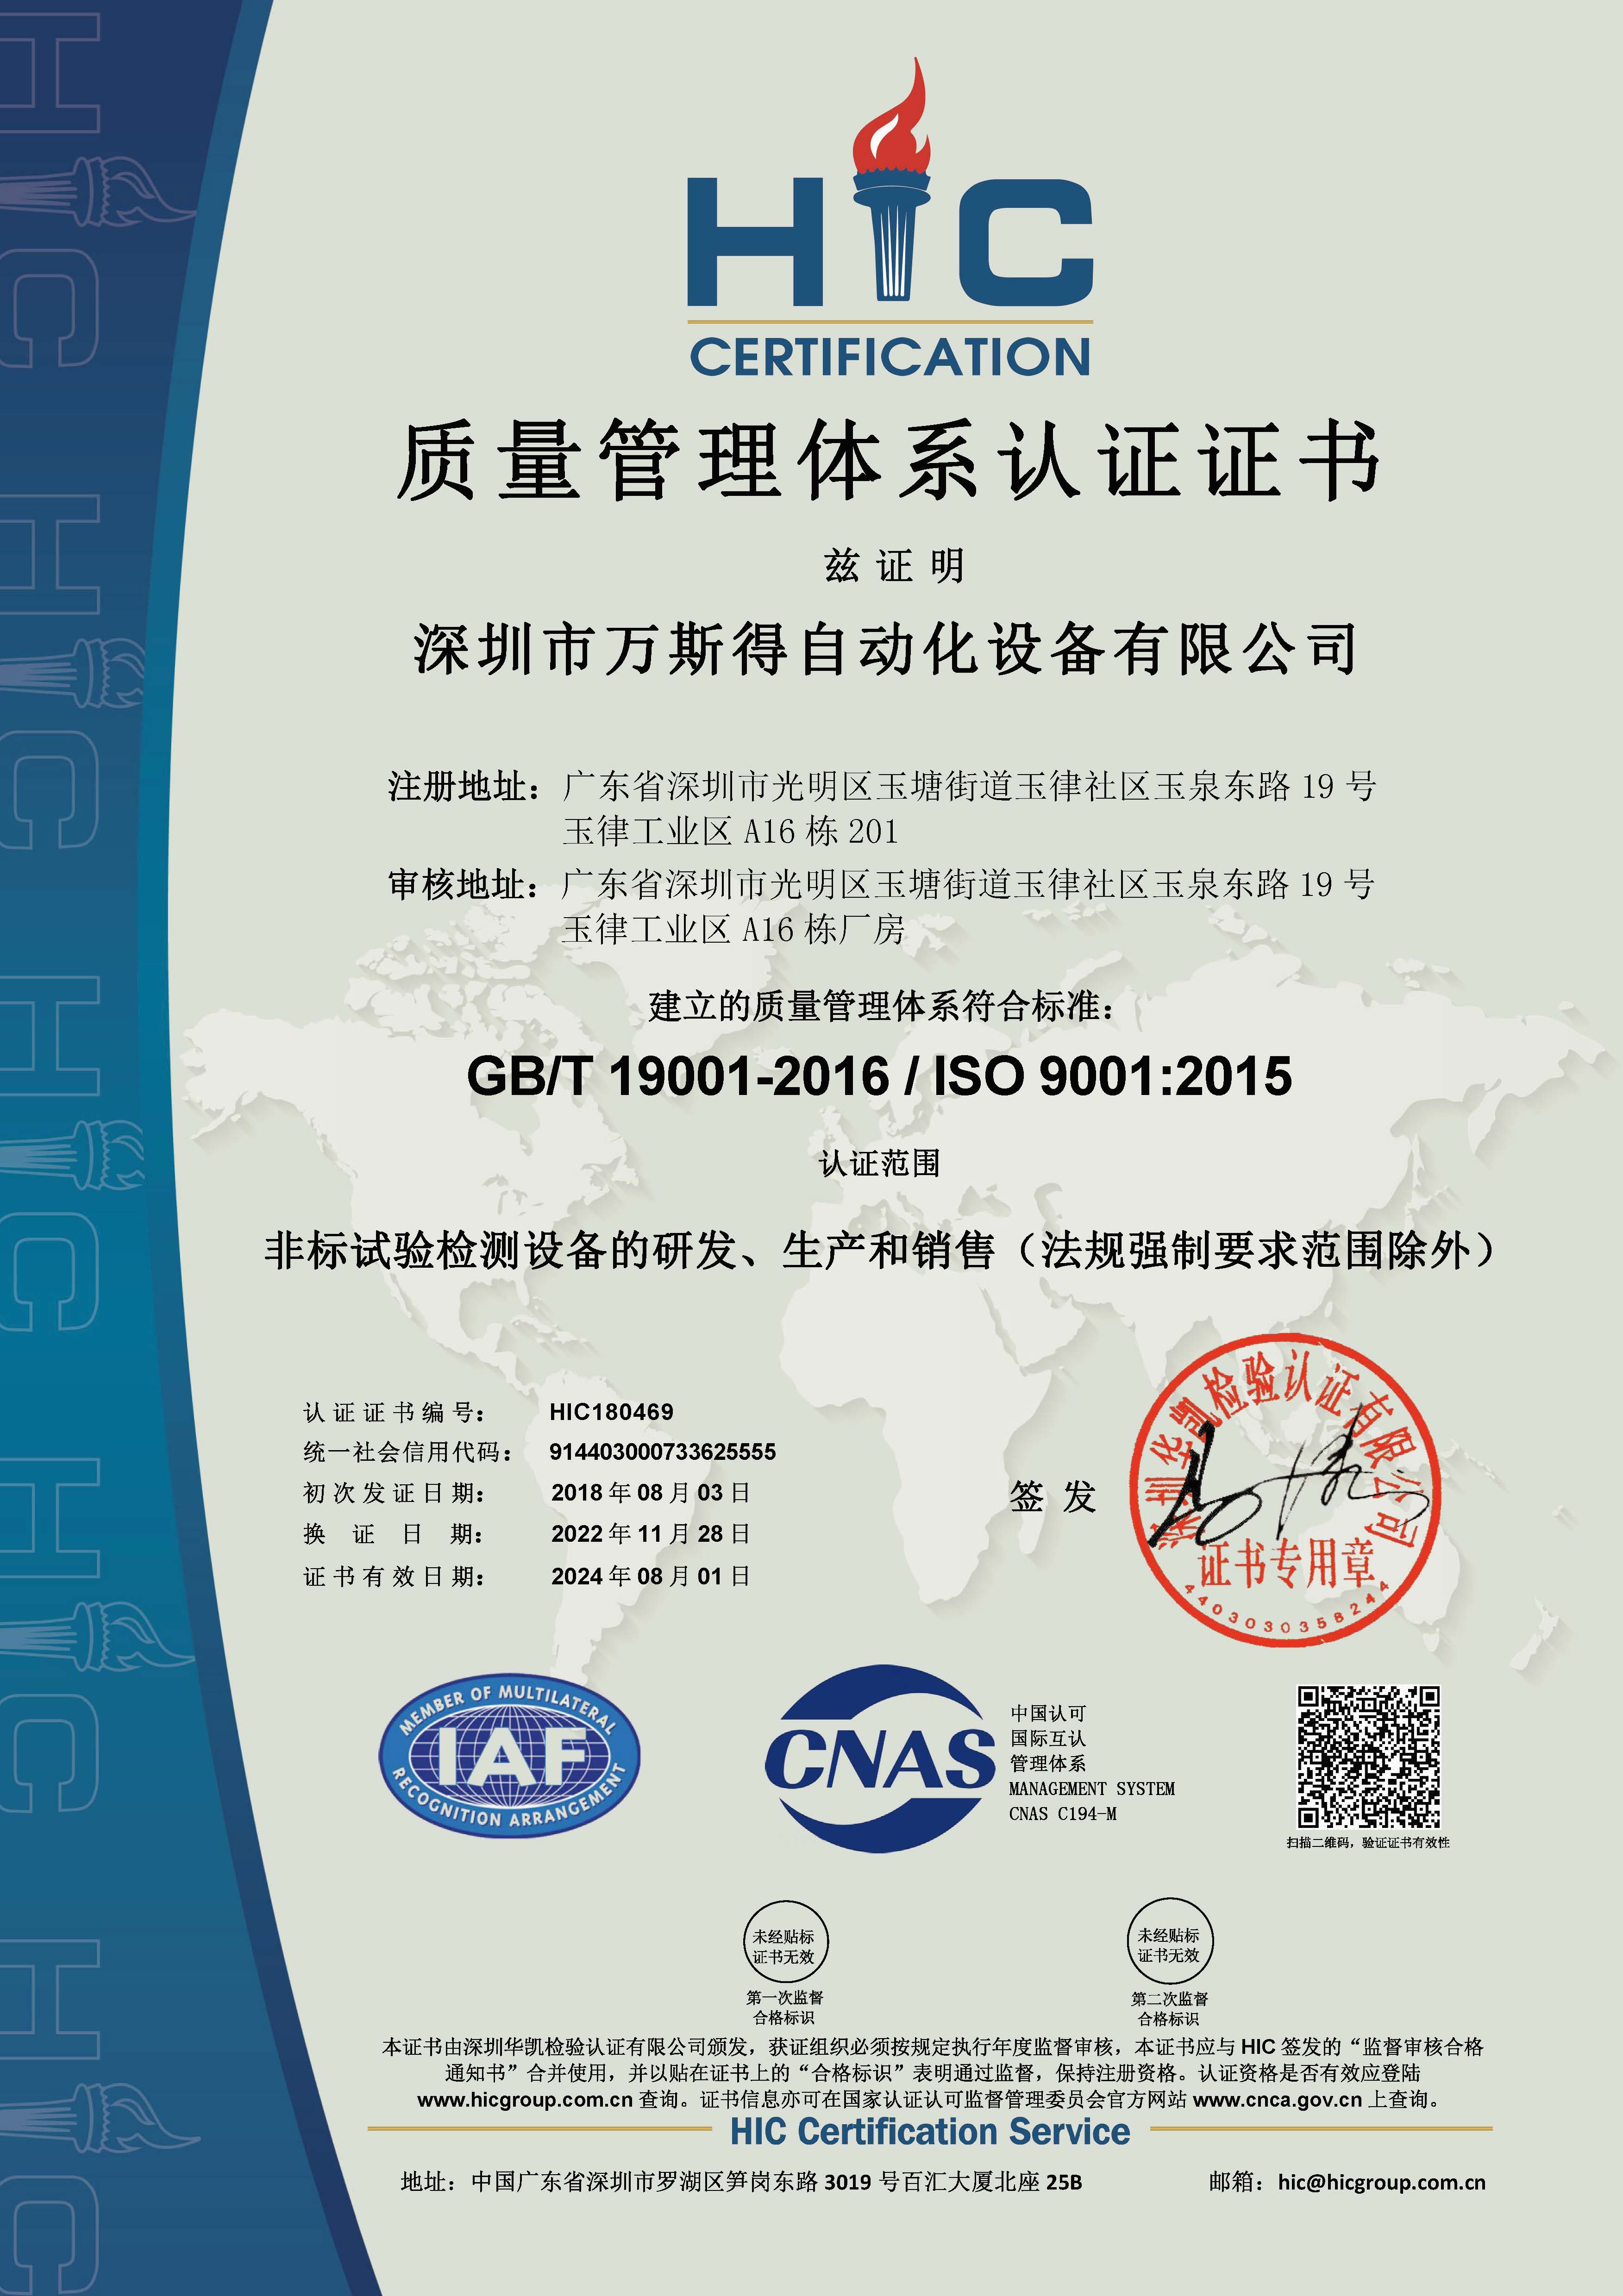 万斯得的质量管理体系认证ISO9001